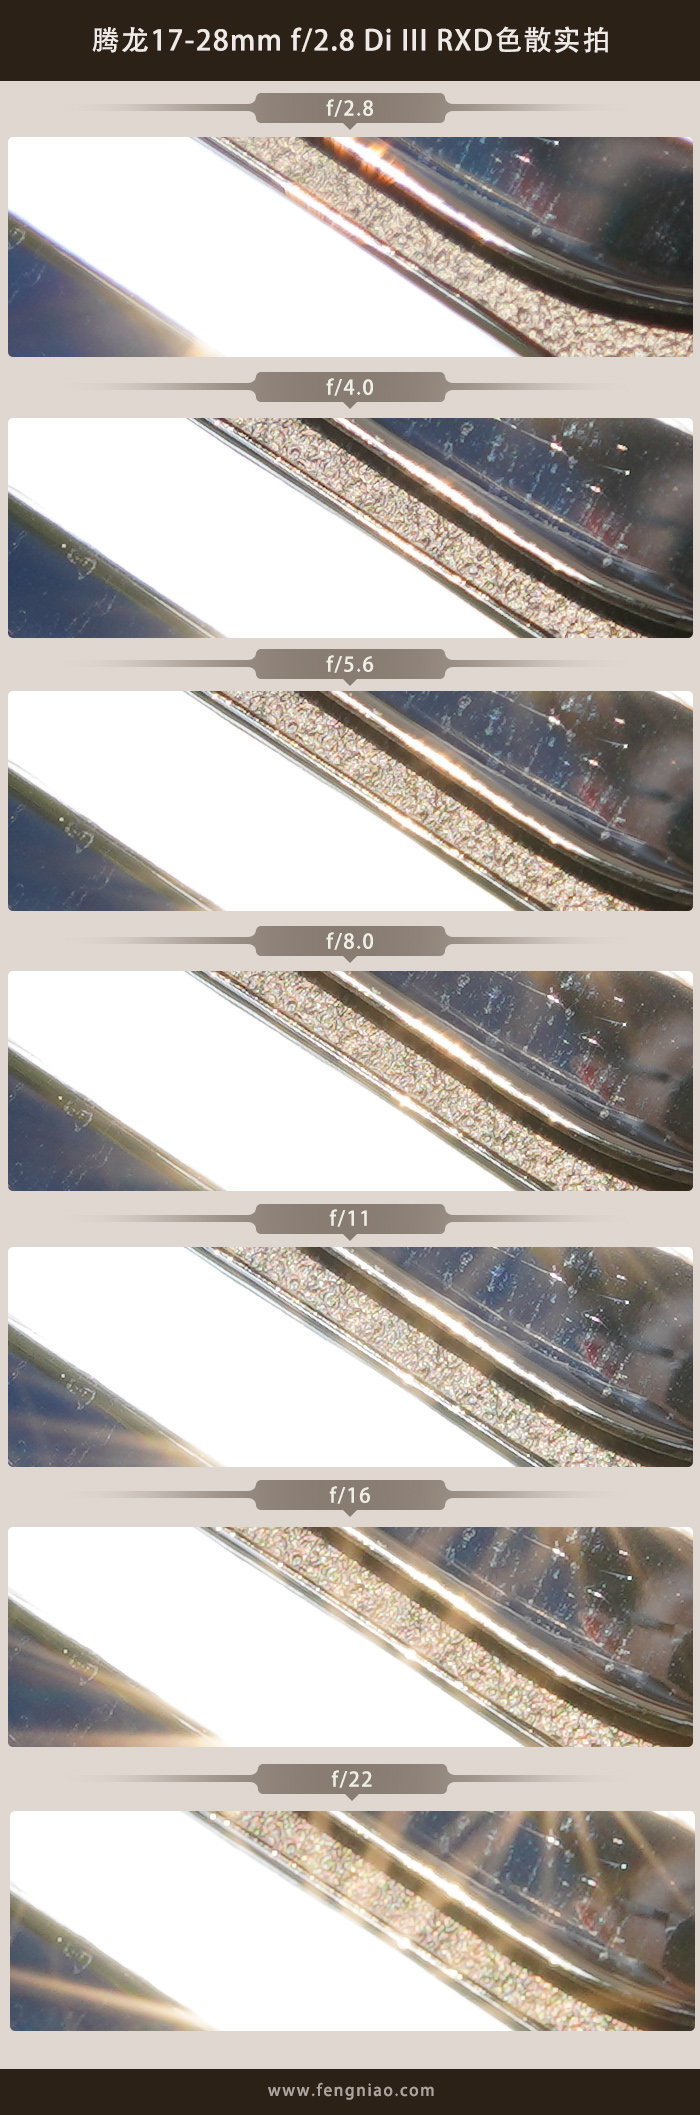 超性价比广角拓展 腾龙17-28mm F2.8 Di III RXD评测